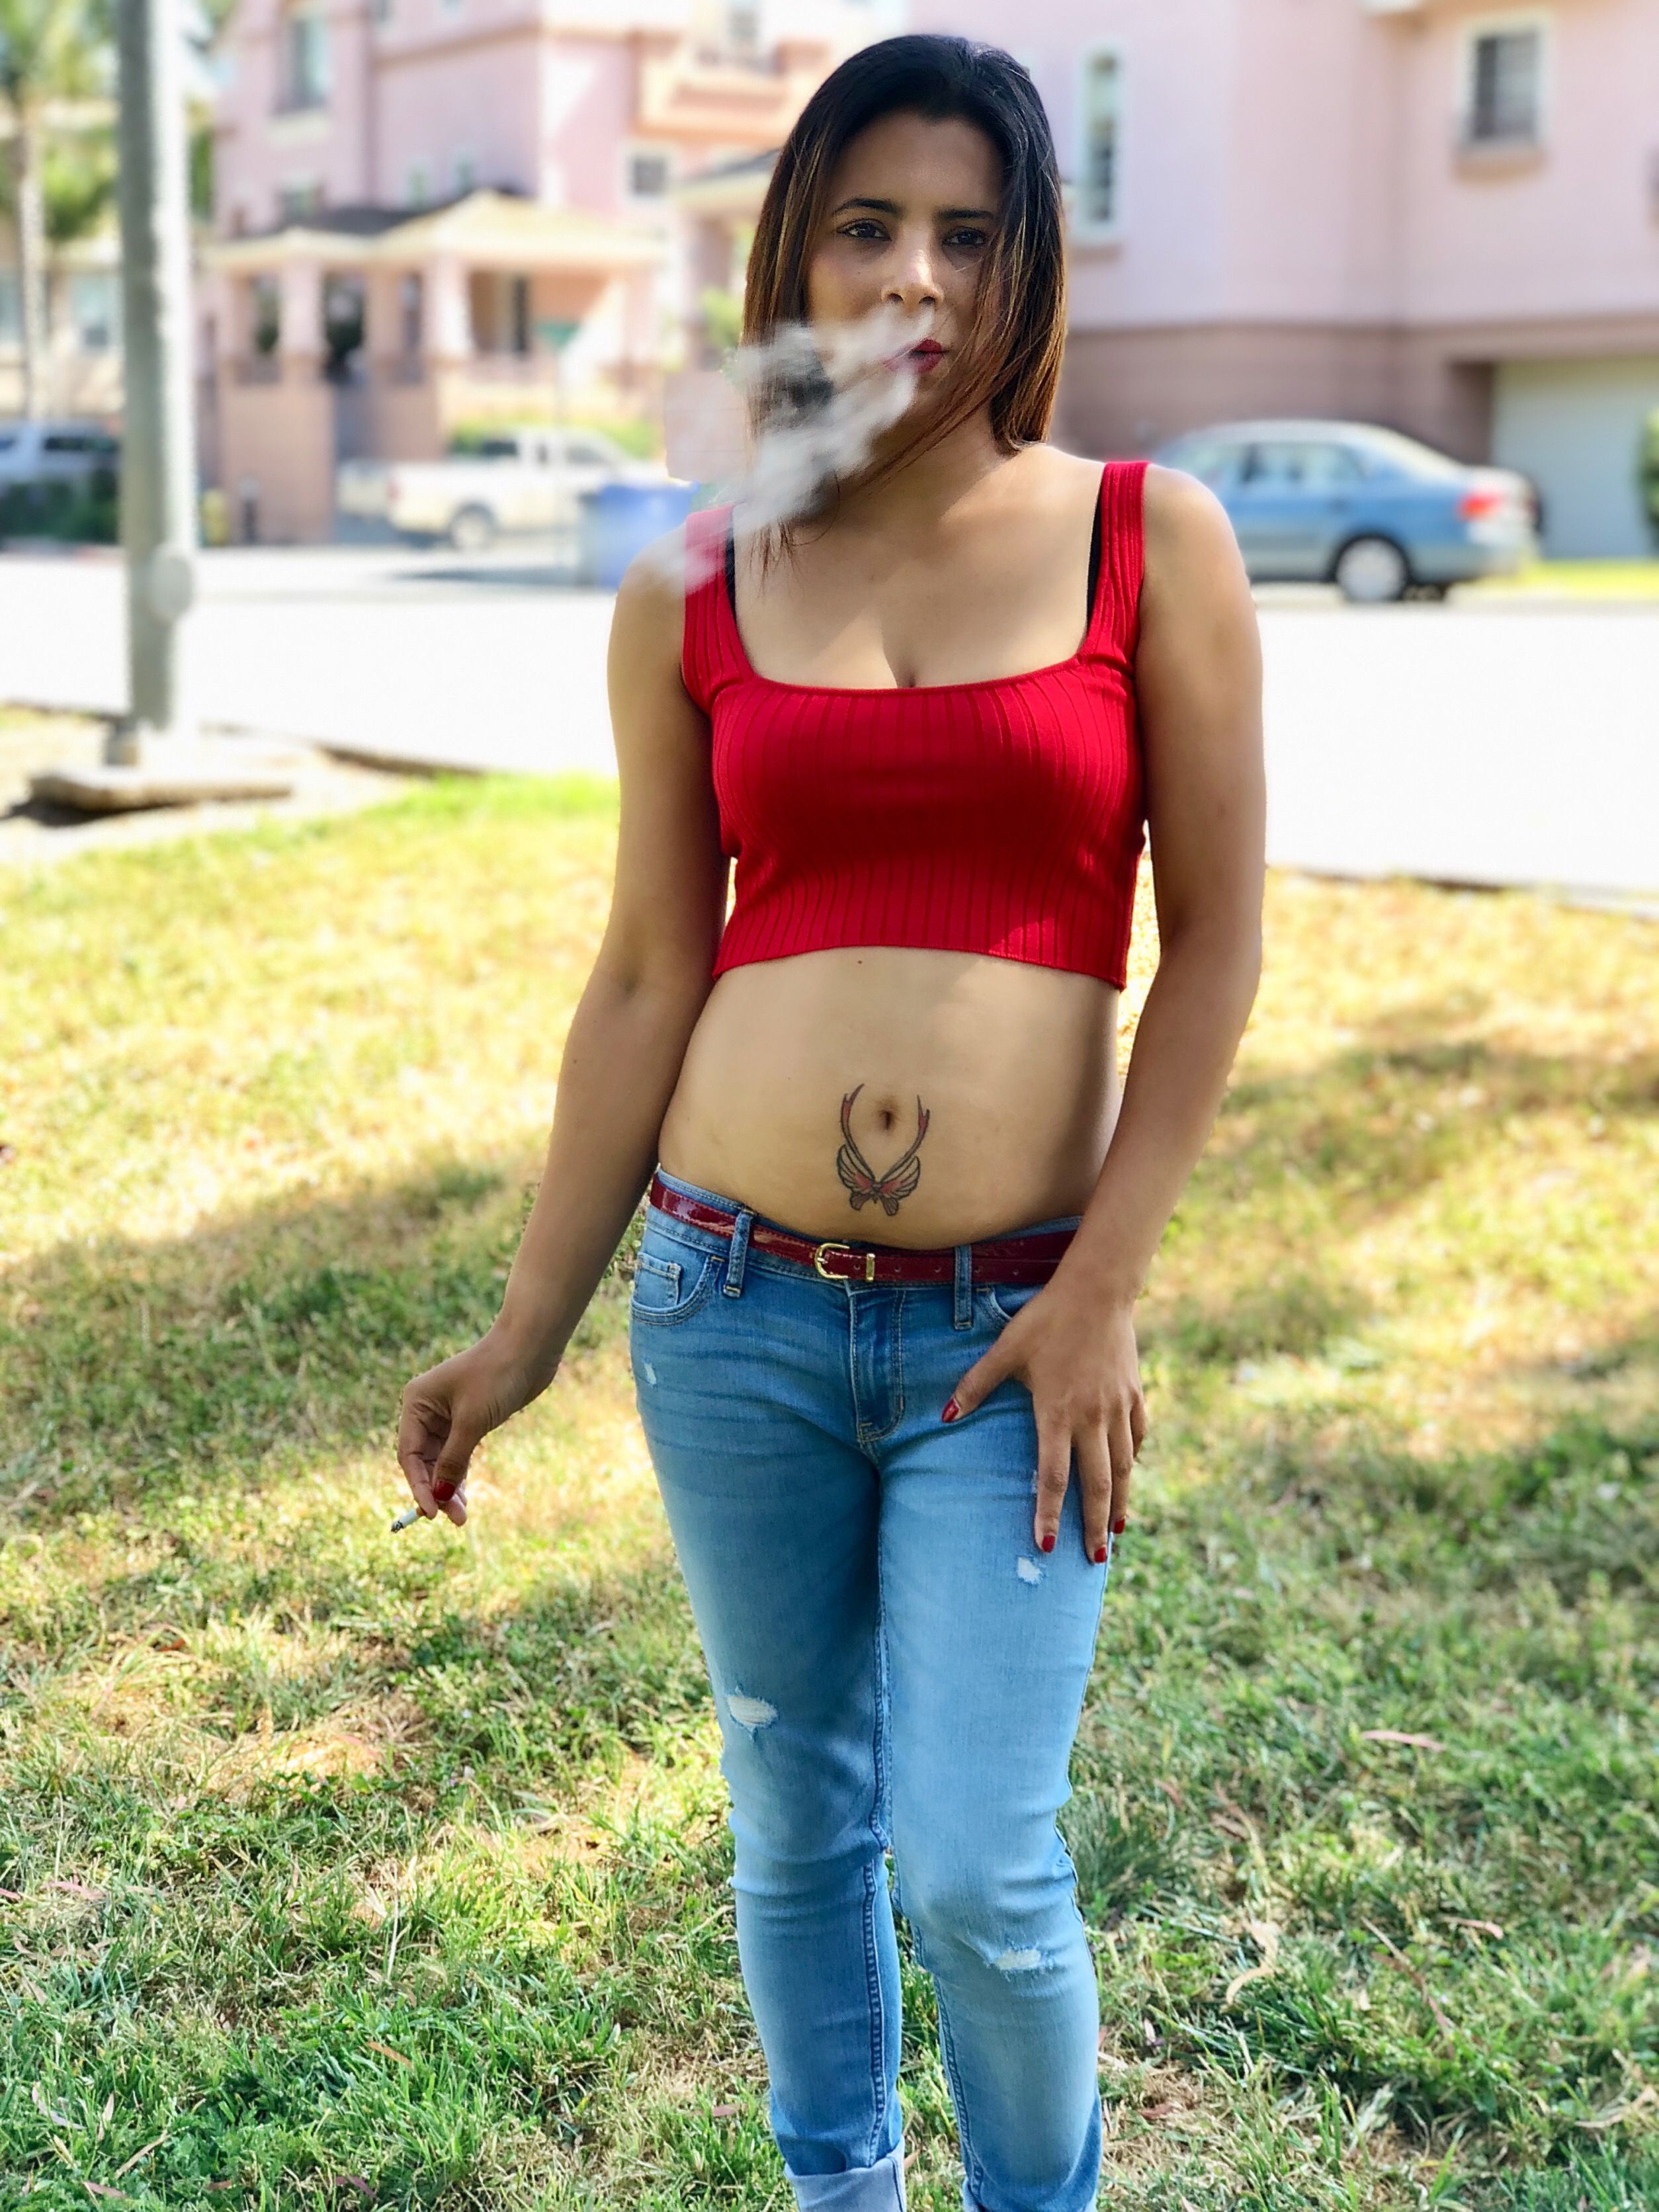 Hot indian girl smoking